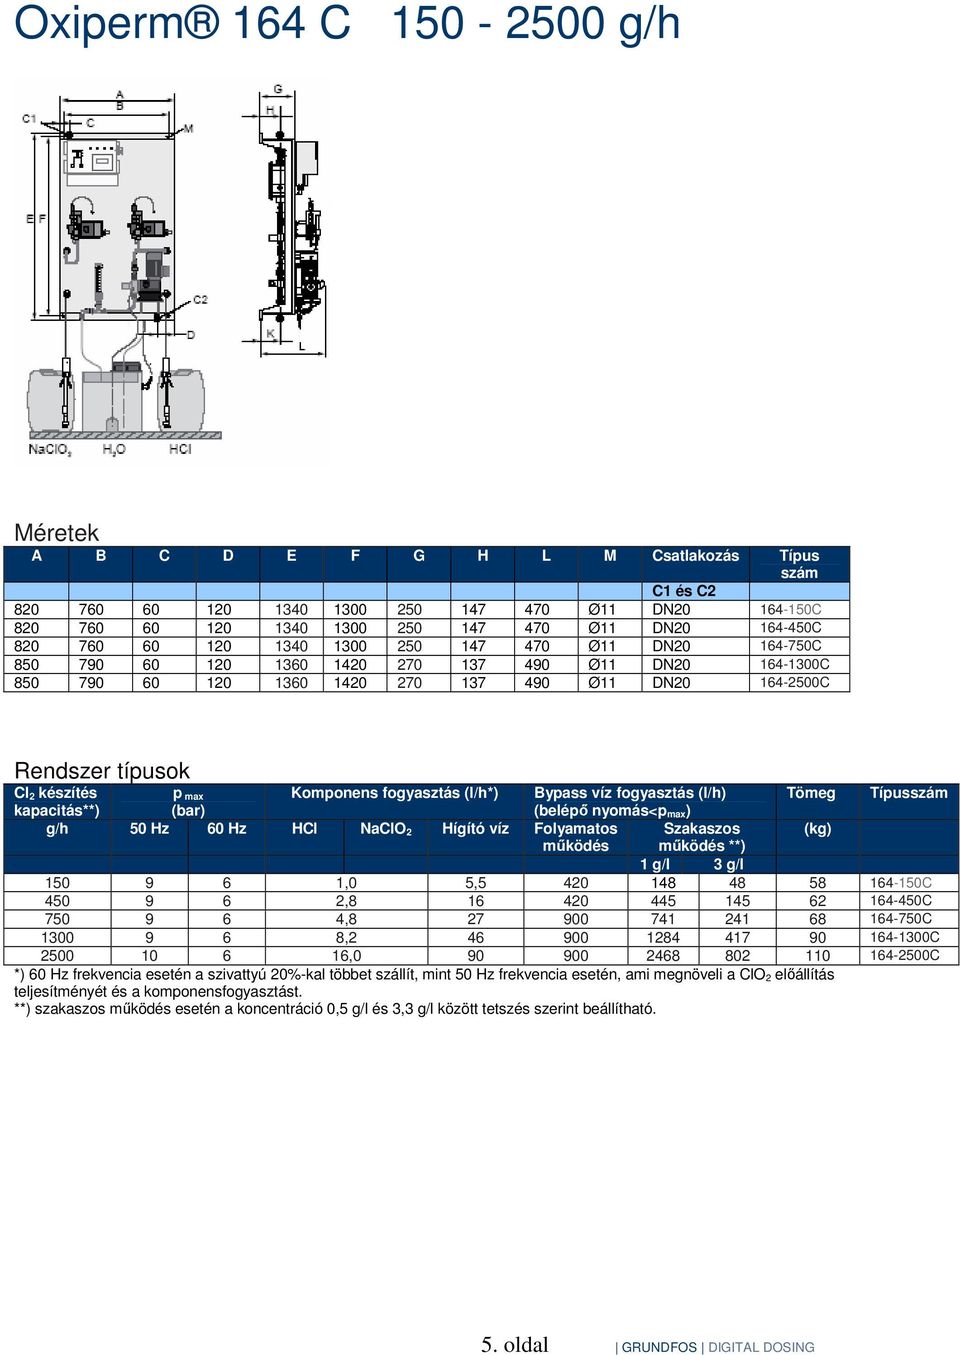 max Komponens fogyasztás (l/h*) Bypass víz fogyasztás (l/h) Tömeg Típusszám kapacitás**) (bar) (belépı nyomás<p max) g/h 50 Hz 60 Hz HCl NaClO 2 Hígító víz Folyamatos Szakaszos (kg) mőködés mőködés